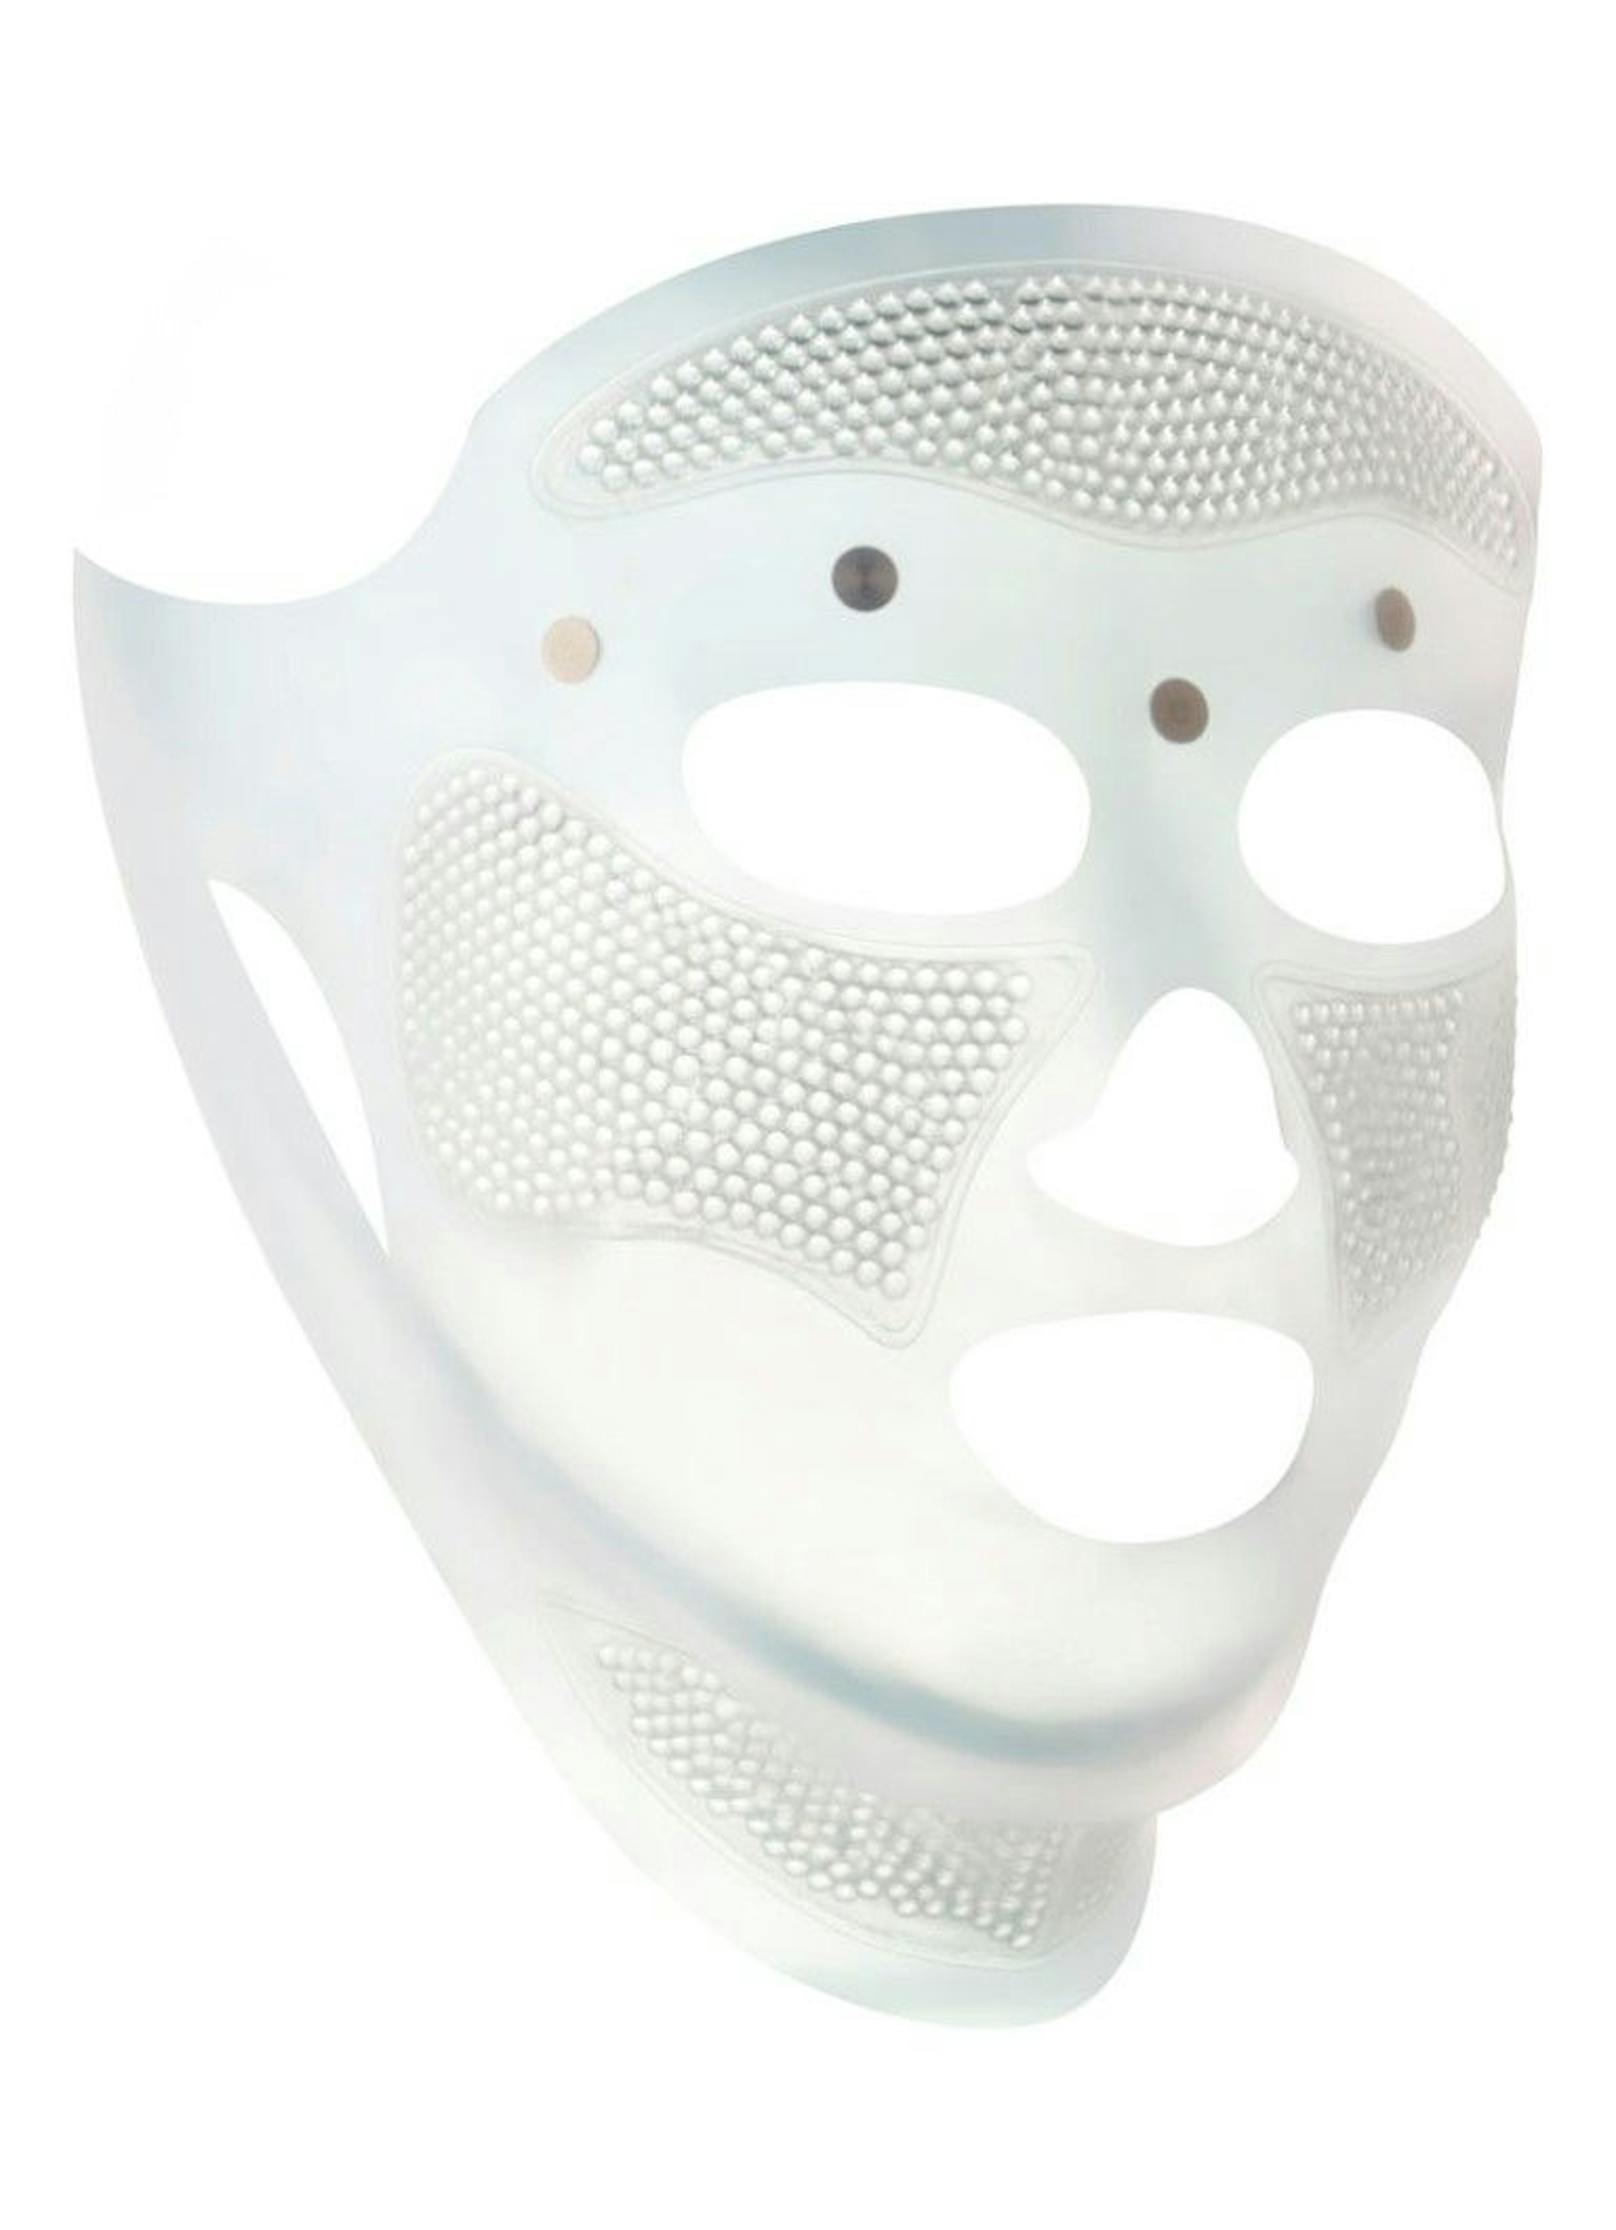 Die Cryo-Recovery Face Mask von Maskenbildnerin Charlotte Tilbury kannst du bereits um 63 Euro kaufen und alle Beauty-Vorzüge genießen.